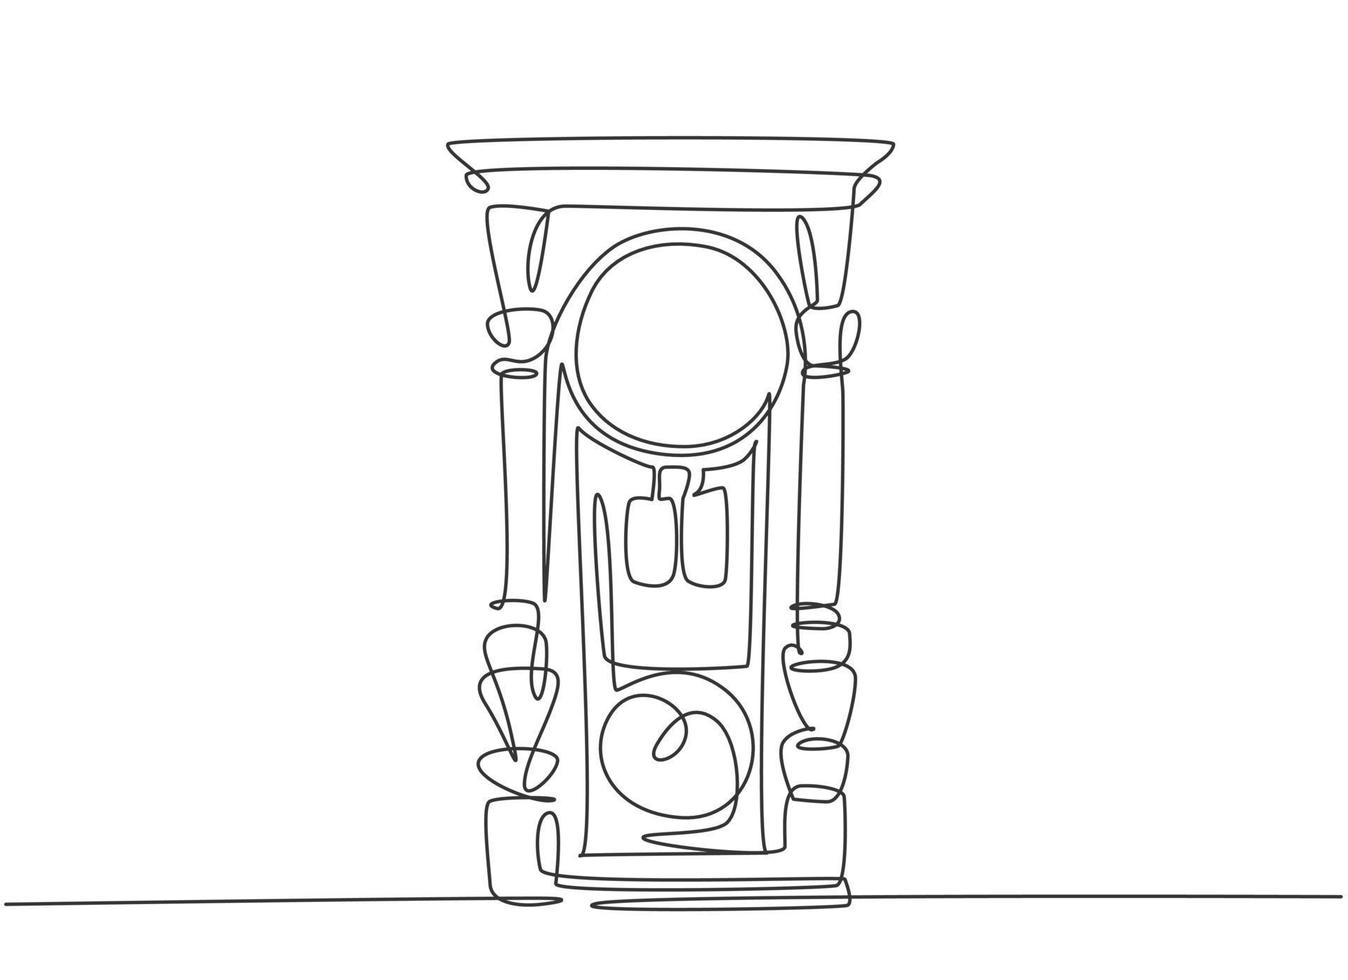 un dibujo de una sola línea de reloj de pared de madera clásico antiguo retro. Ilustración de vector de diseño de dibujo gráfico de línea continua concepto de elemento de reloj antiguo vintage